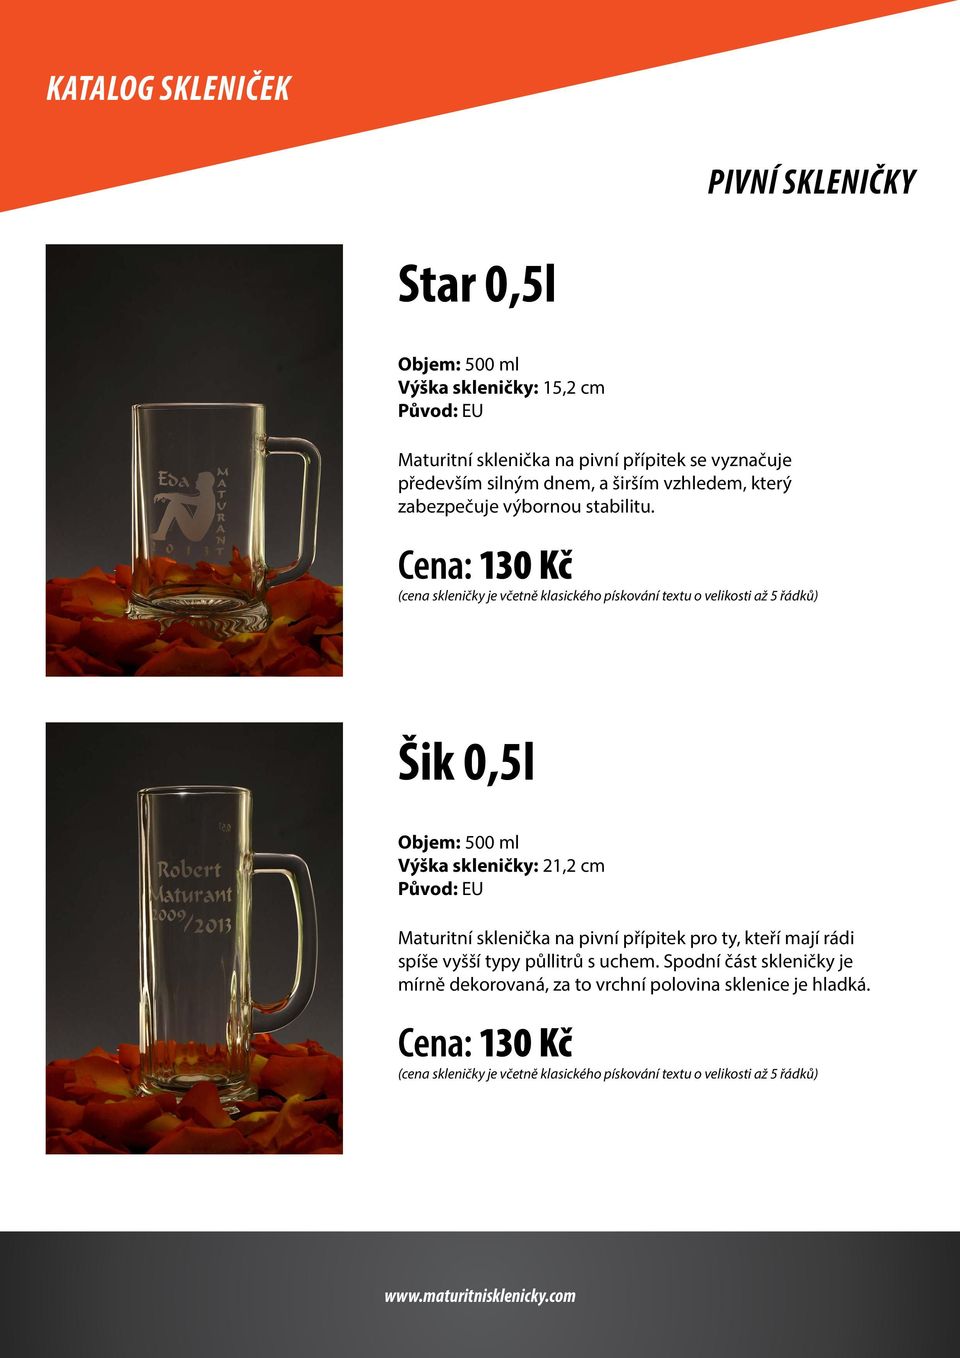 Cena: 130 Kč Šik 0,5l Objem: 500 ml Výška skleničky: 21,2 cm Původ: EU Maturitní sklenička na pivní přípitek pro ty, kteří